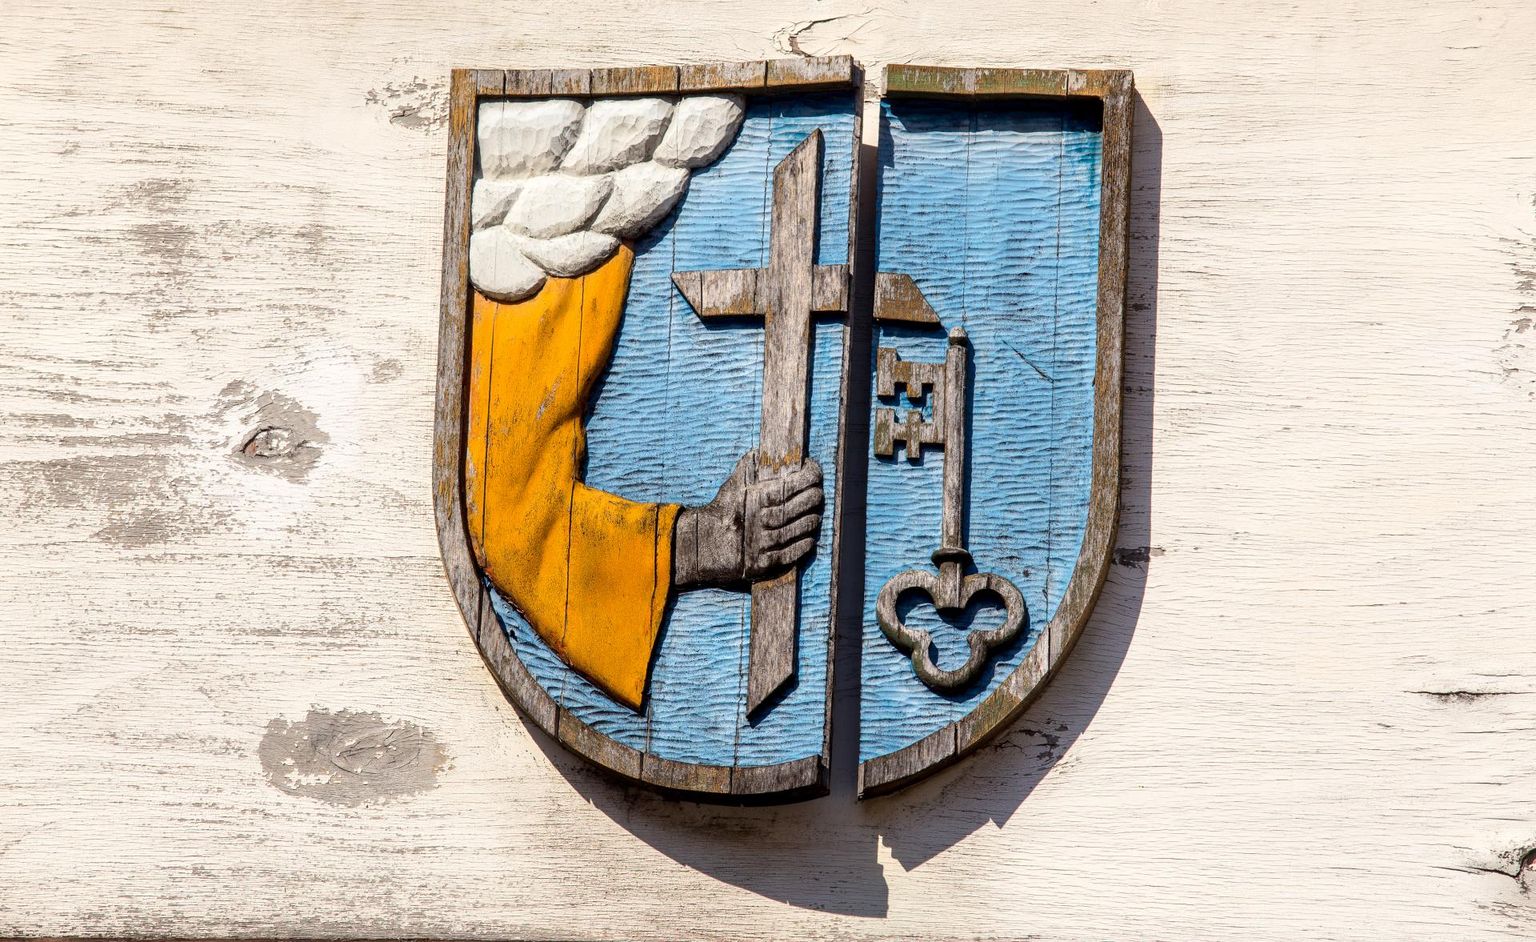 Pildil on Pärnu vapp, millel kujutatakse preestri käes olevat risti, kõrval linnavärvava võti.